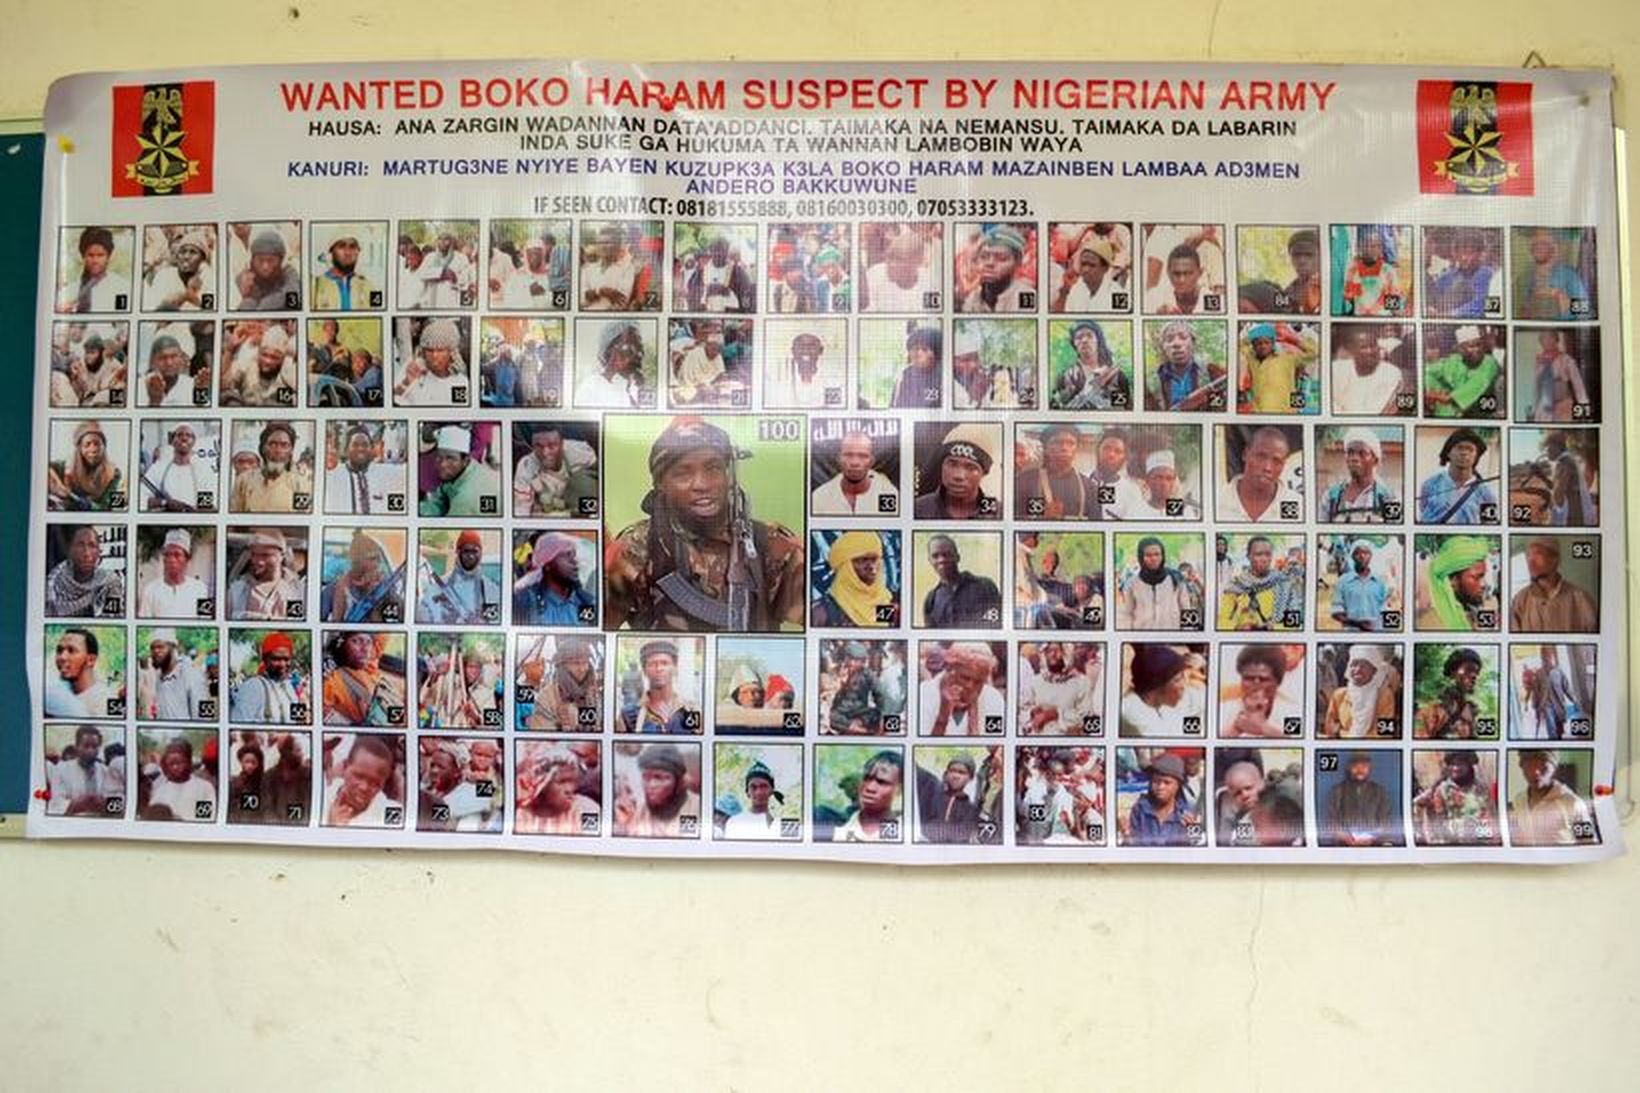 Veggspjald sem sýnir eftirlýsta vígamenn Boko Haram í Nígeríu.